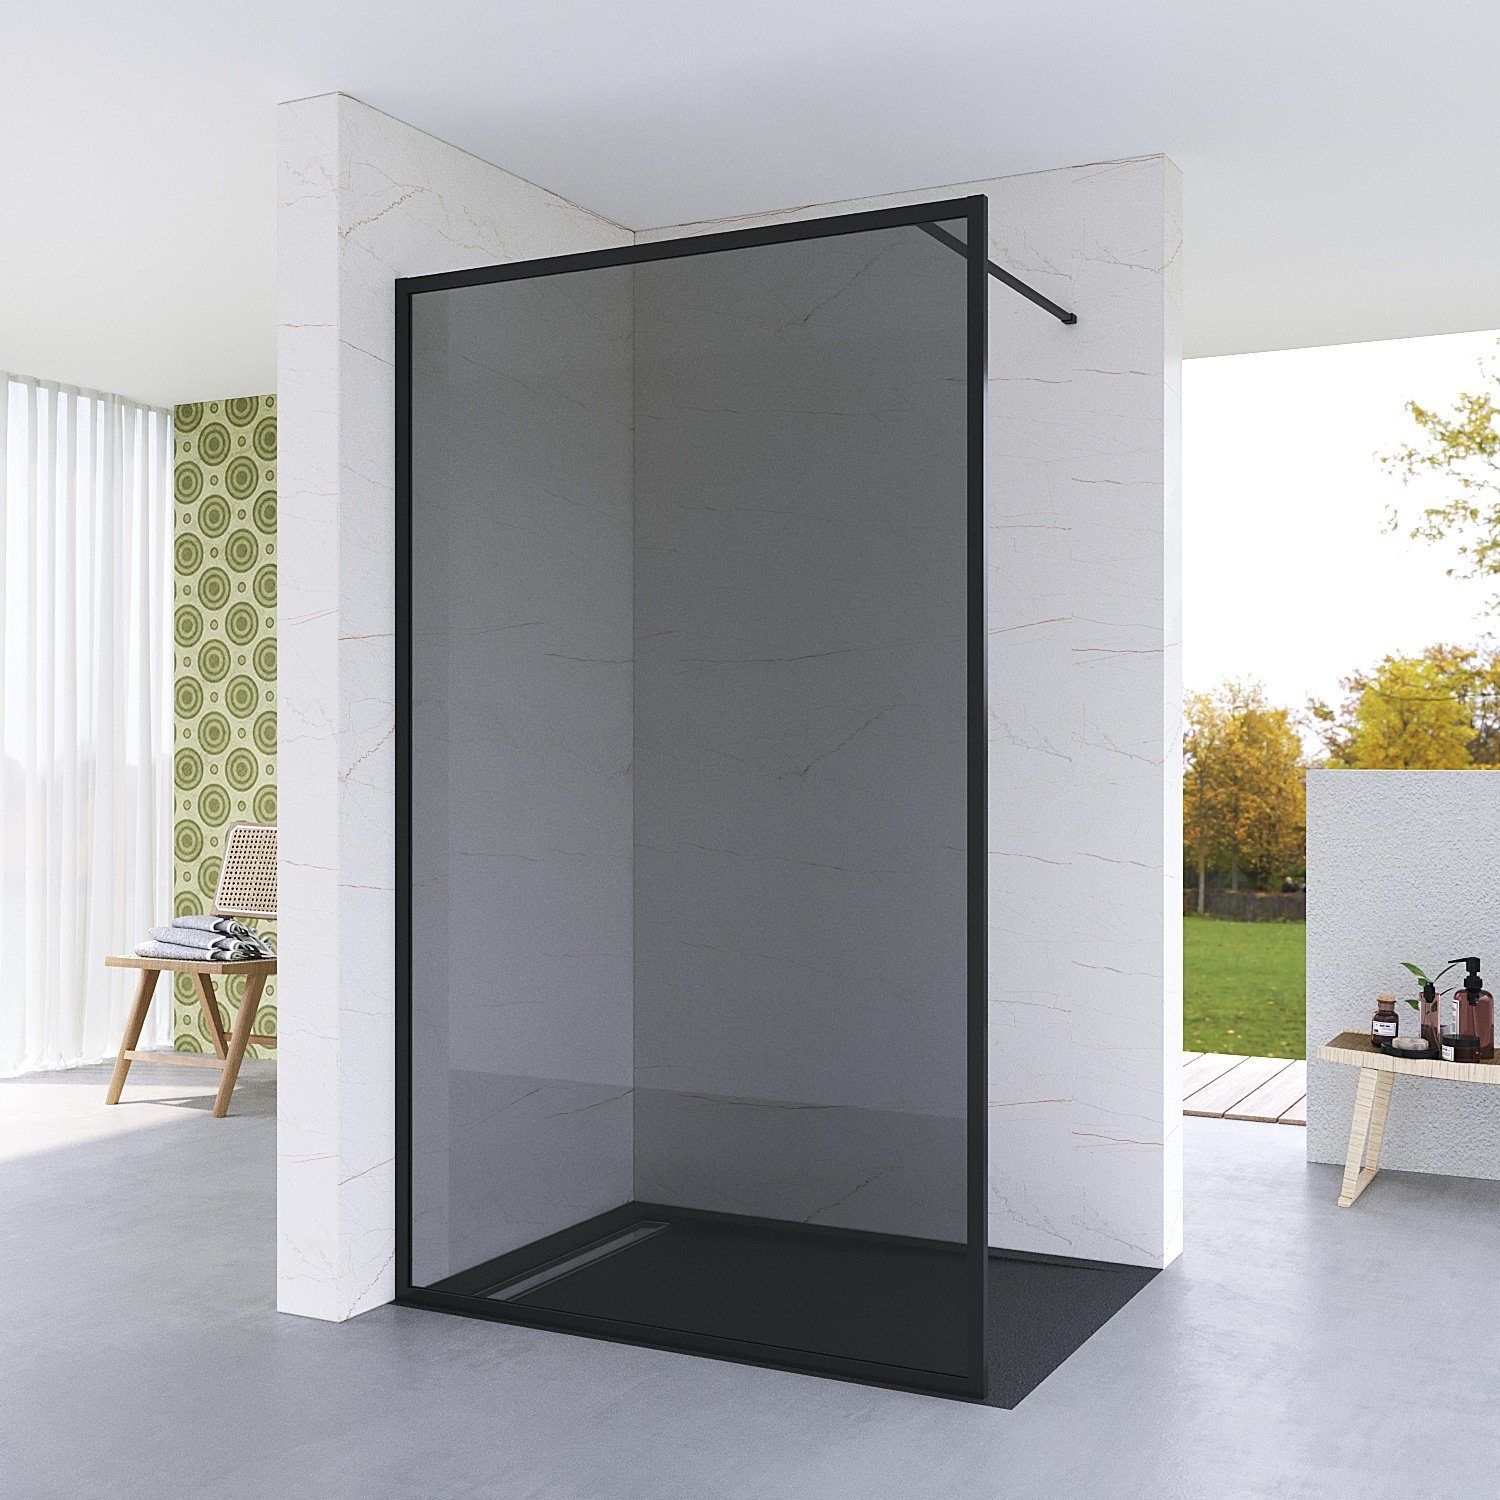 aqua batos Walk-in-Dusche Duschabtrennung Walk in Dusche Duschwand schwarz  Grauglas Duschkabine, 8 mm Einscheibensicherheitsglas, Nanobeschichtung,  Großer Eingang, Echtglas, mit Verstellbereich, Vollrahmen